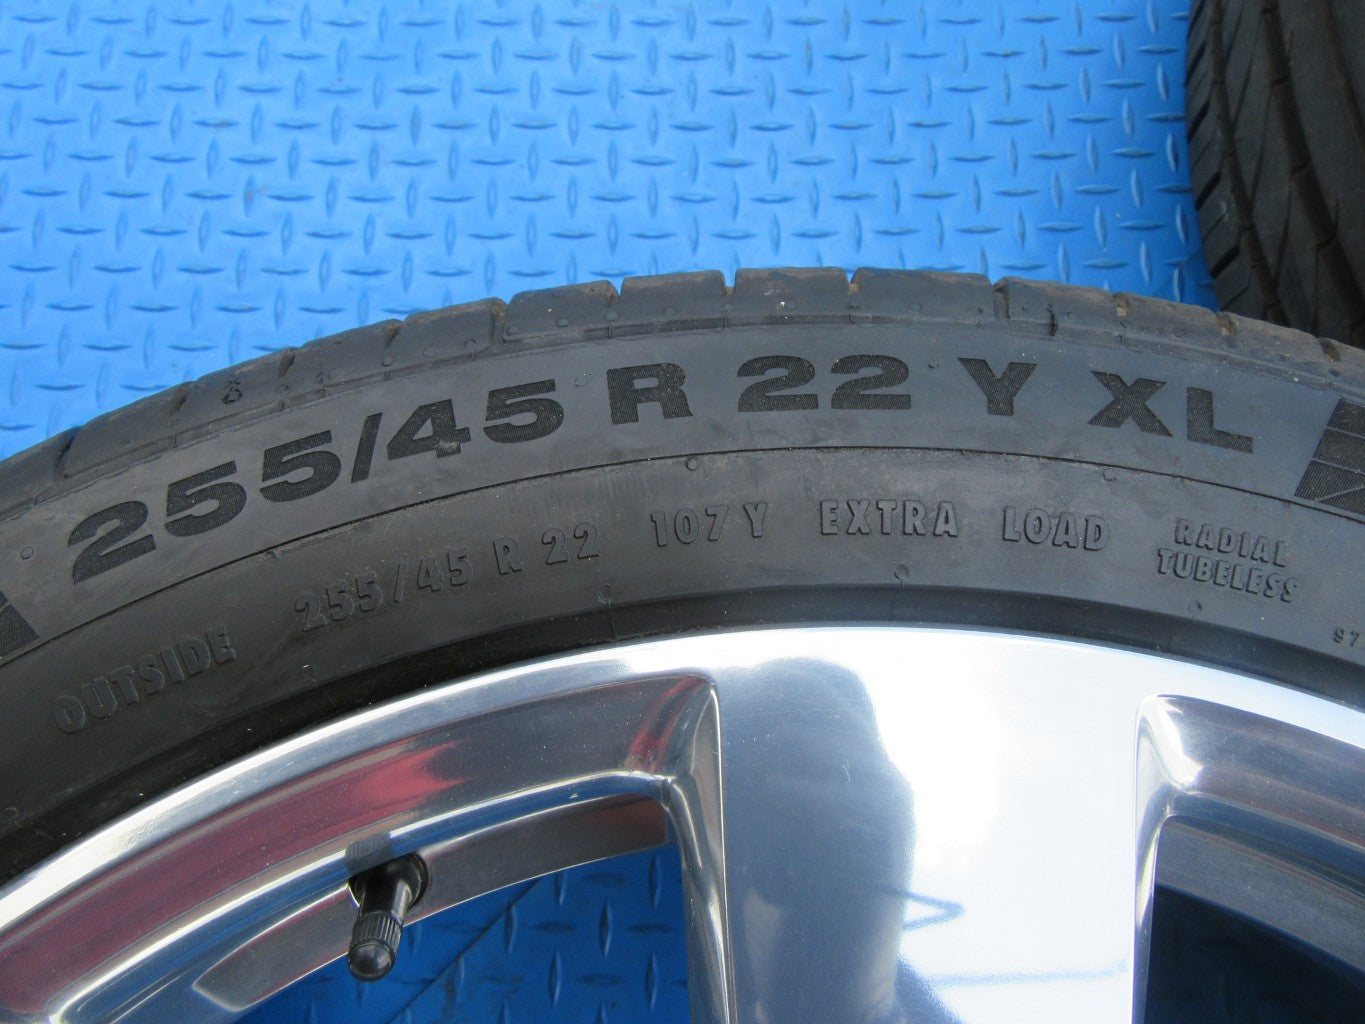 22" Rolls Royce Cullinan rims wheels tires polished #2570